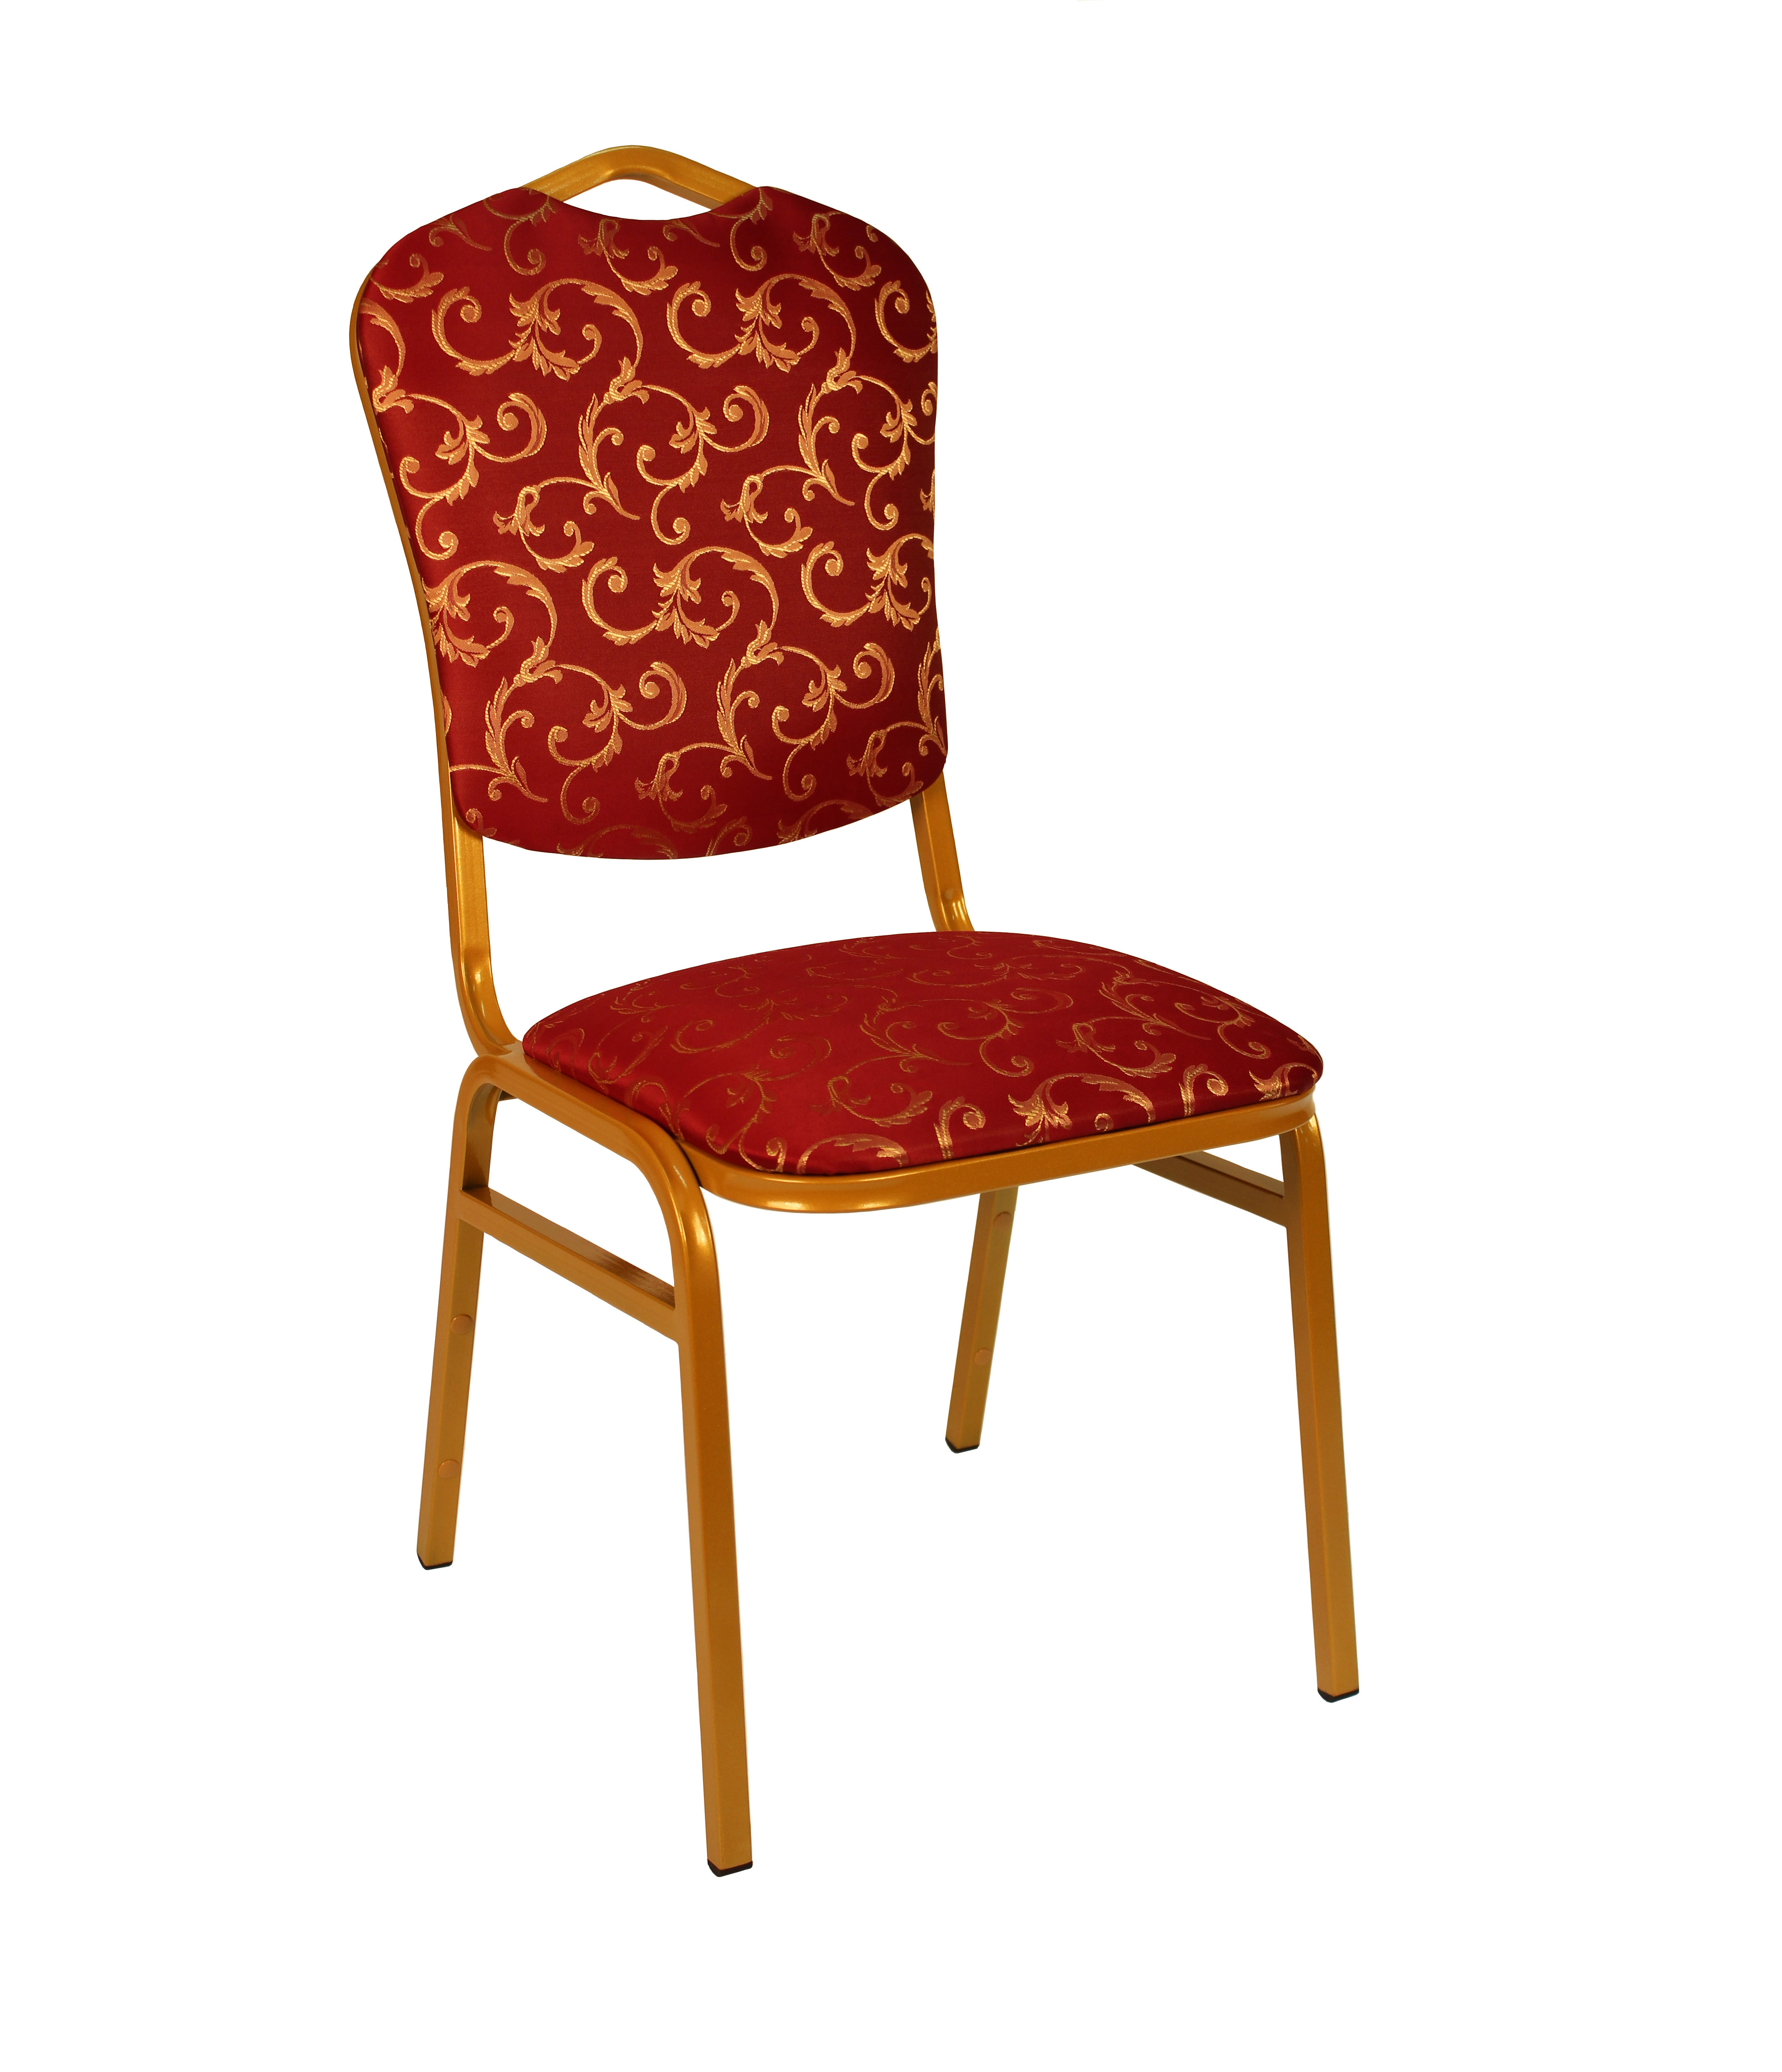 Банкетный стул Квадро 20 мм, накладная спинка, золотой, красные цветы